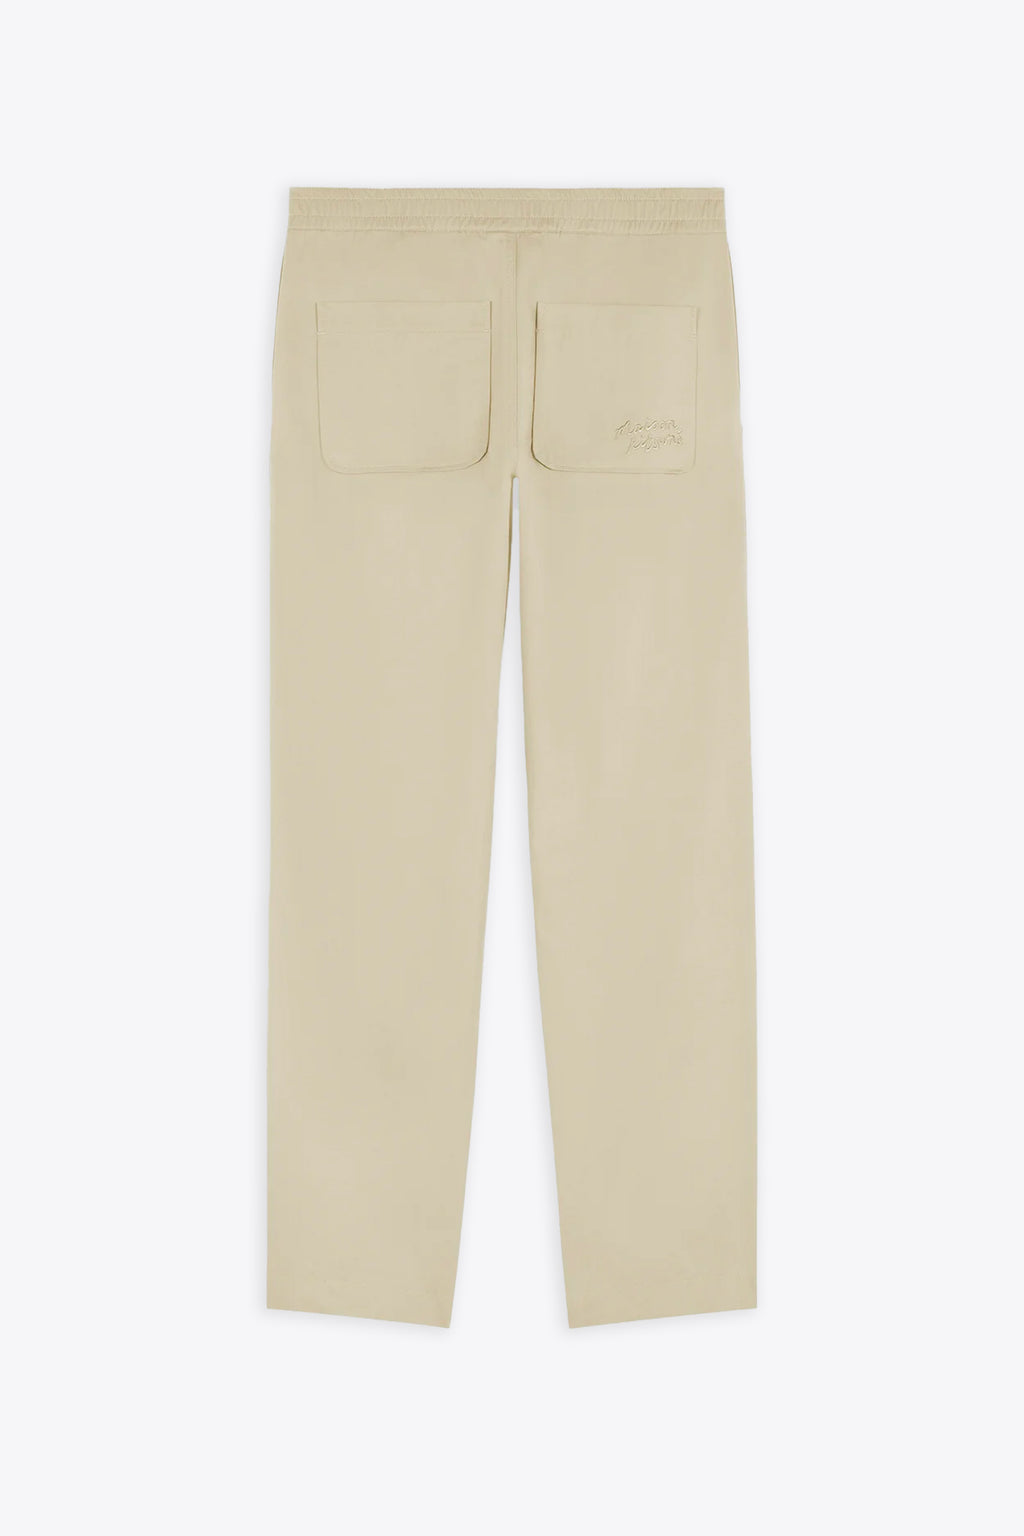 alt-image__Pantalone-in-cotone-beige-chiaro-con-elastico-in-vita---Casual-Pants